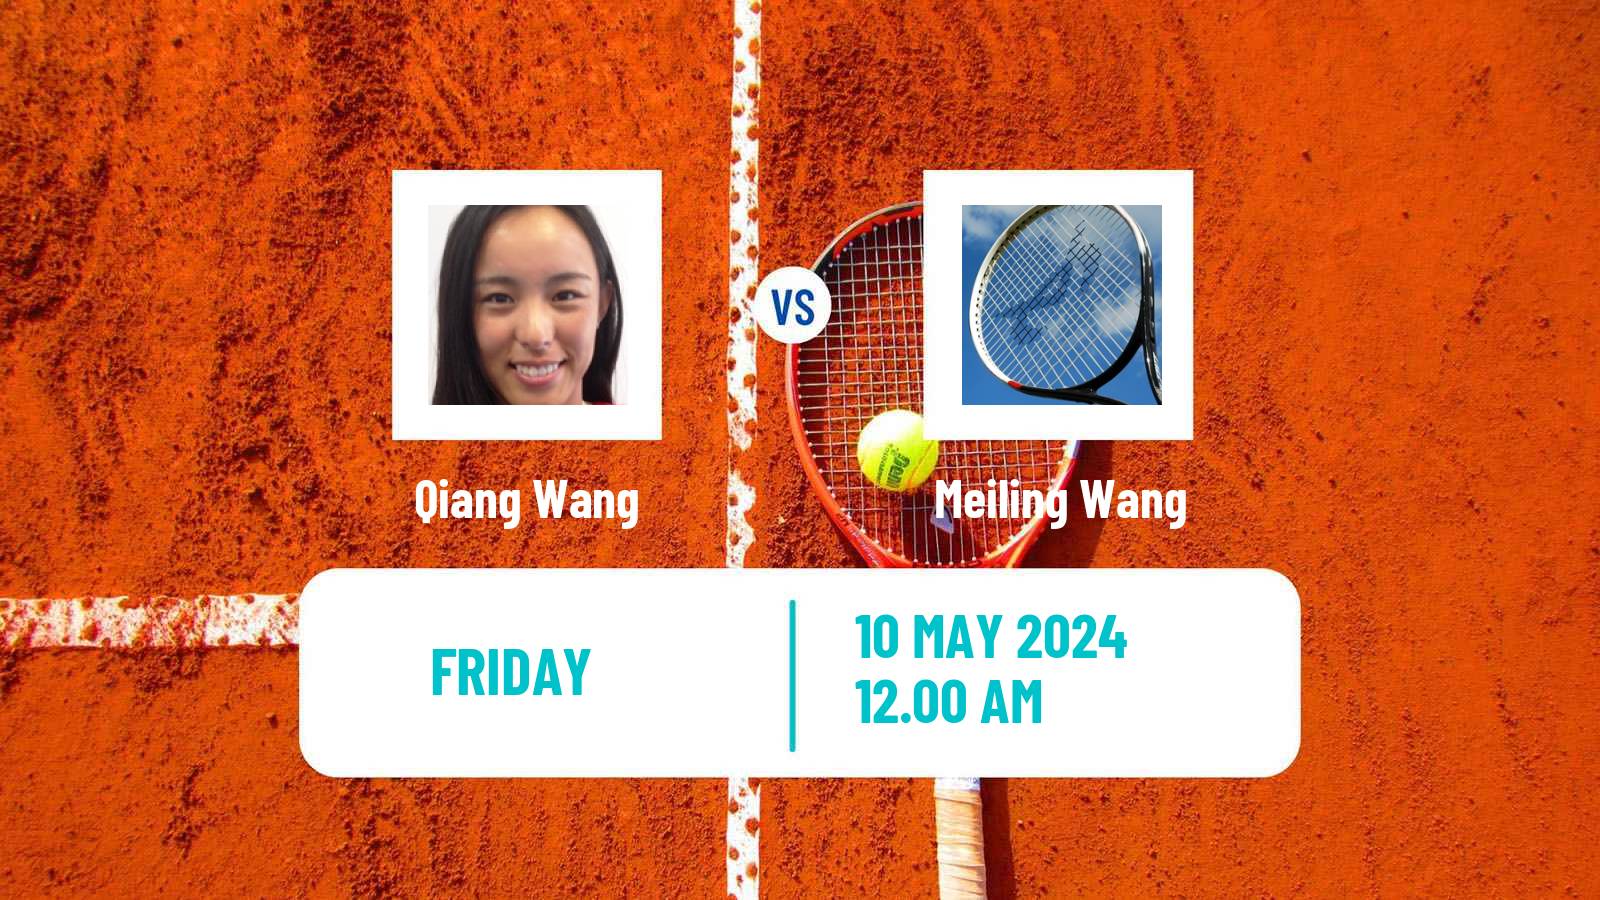 Tennis ITF W75 Luan Women Qiang Wang - Meiling Wang